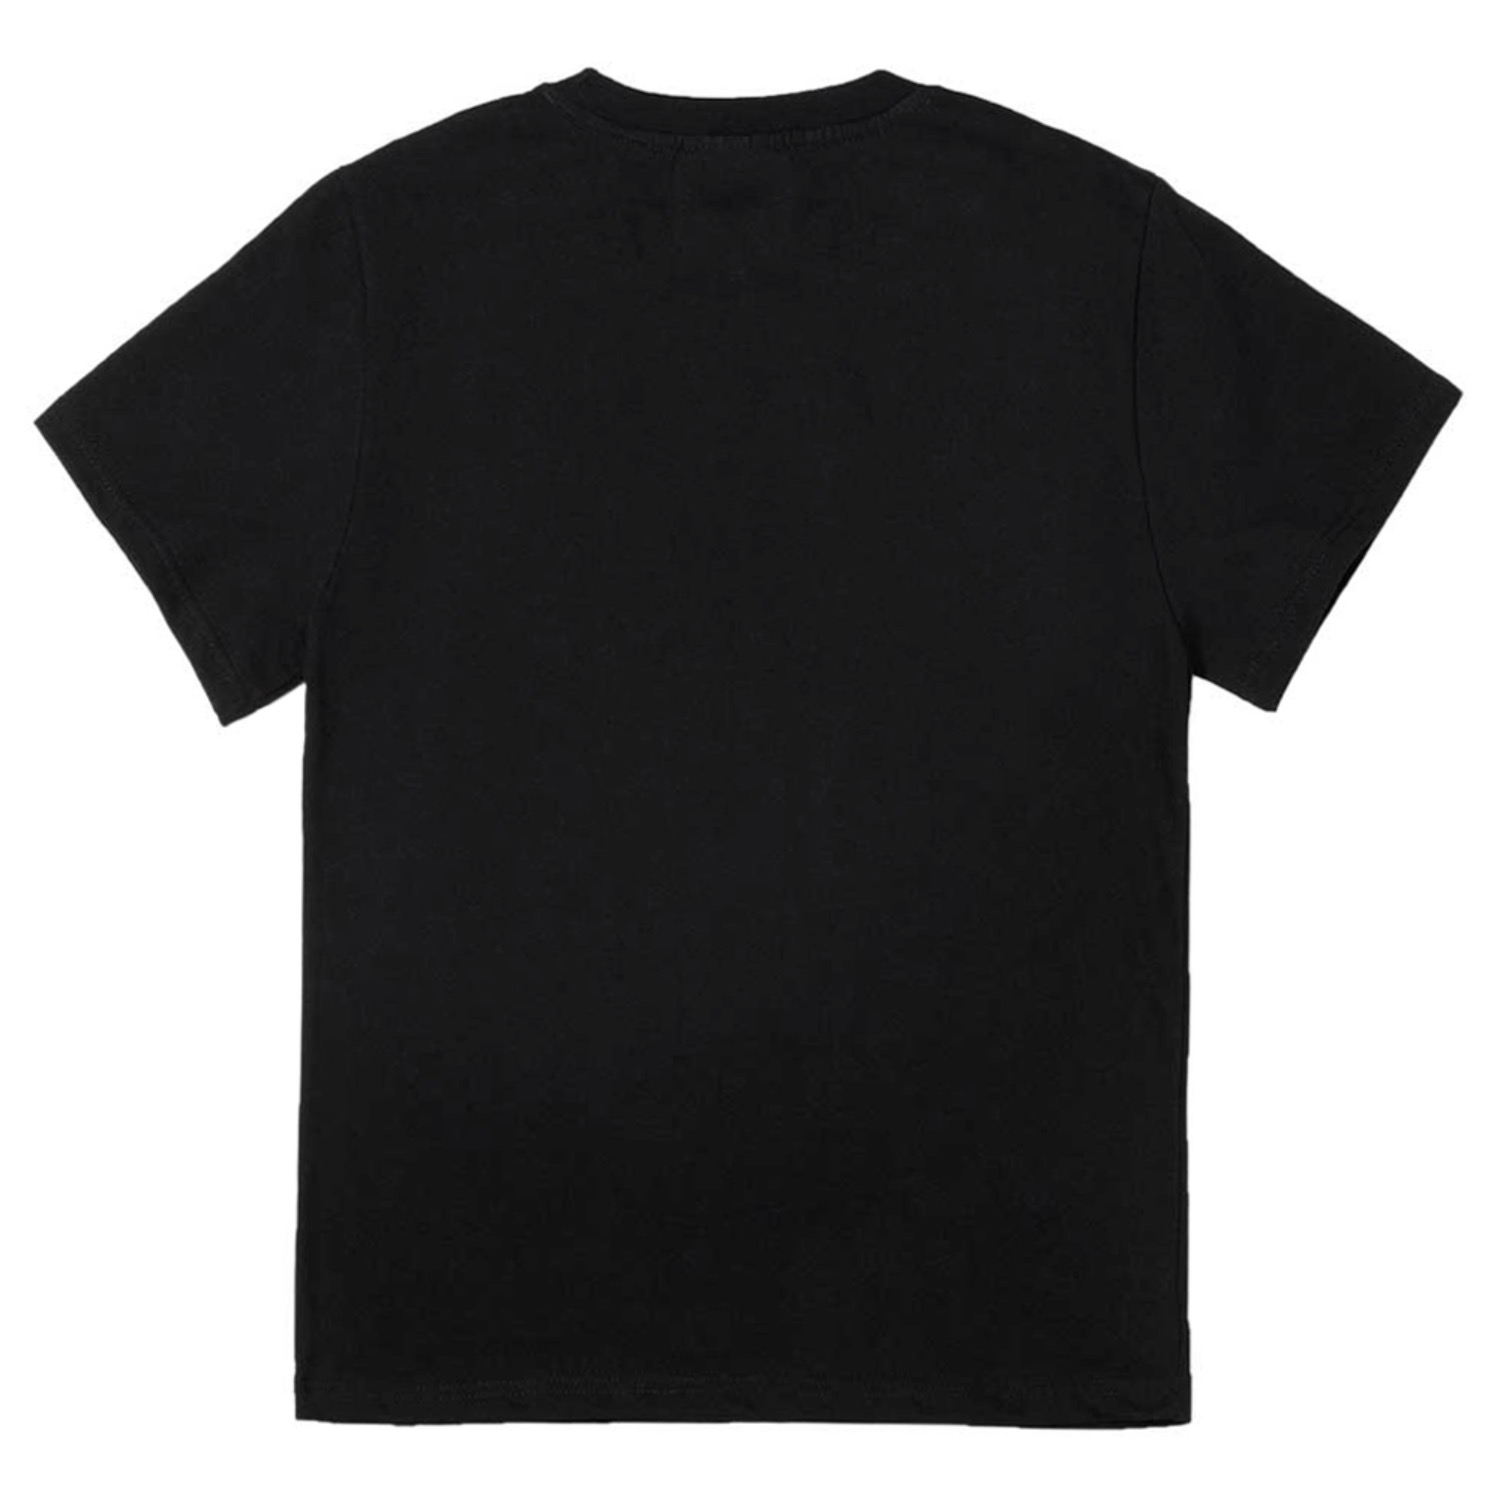 서울체크꽃 반팔티 블랙Seoul check pattern Flower Short Sleeve T-shirts (Black)